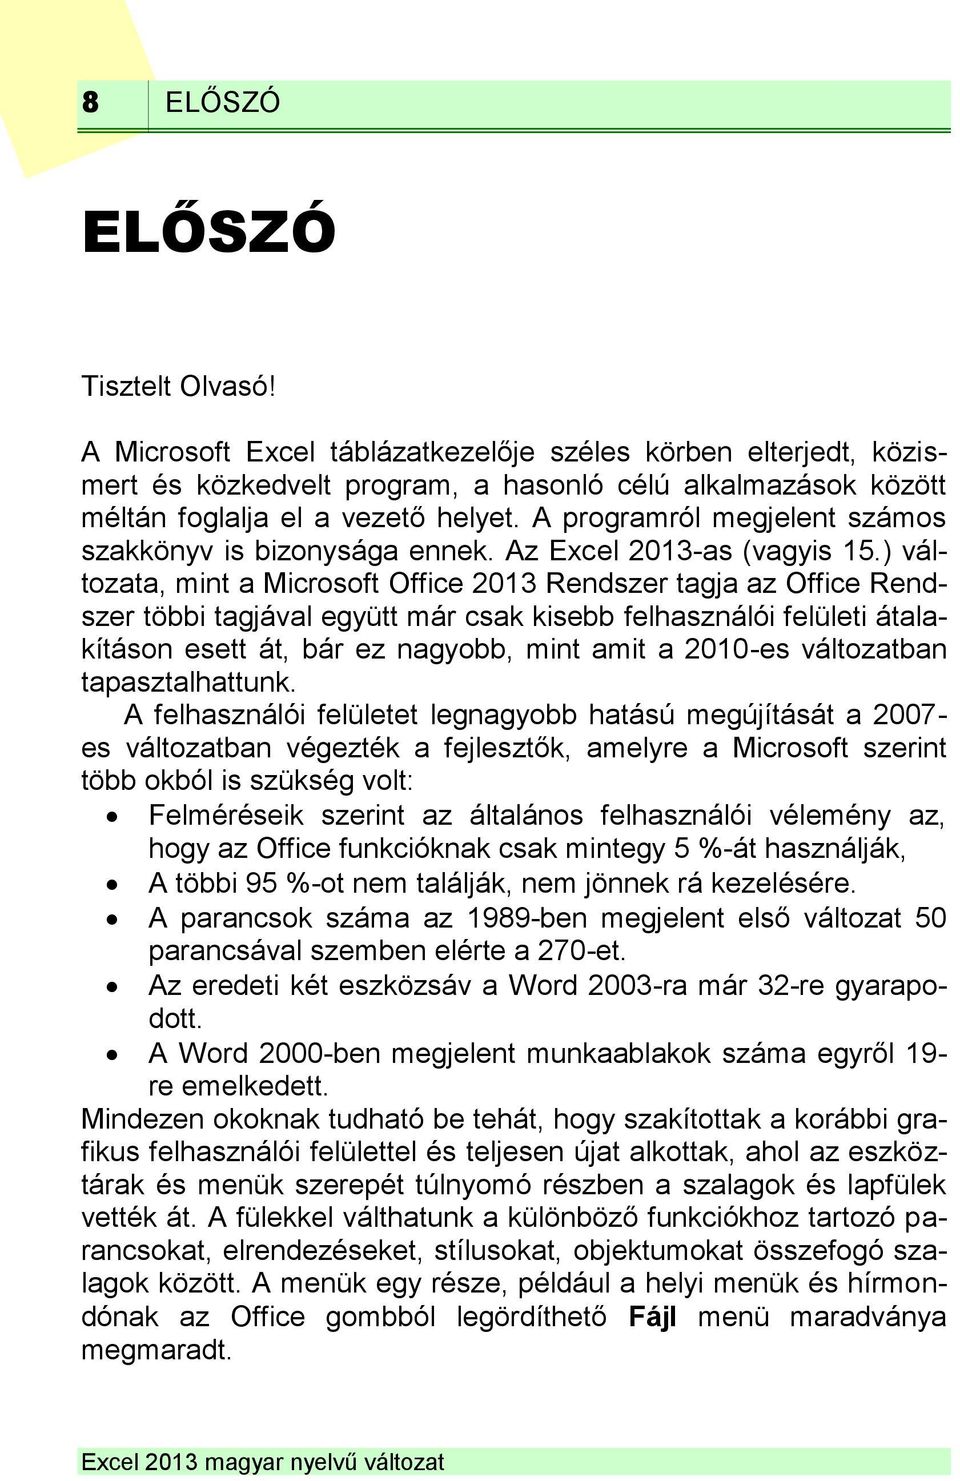 ) változata, mint a Microsoft Office 2013 Rendszer tagja az Office Rendszer többi tagjával együtt már csak kisebb felhasználói felületi átalakításon esett át, bár ez nagyobb, mint amit a 2010-es